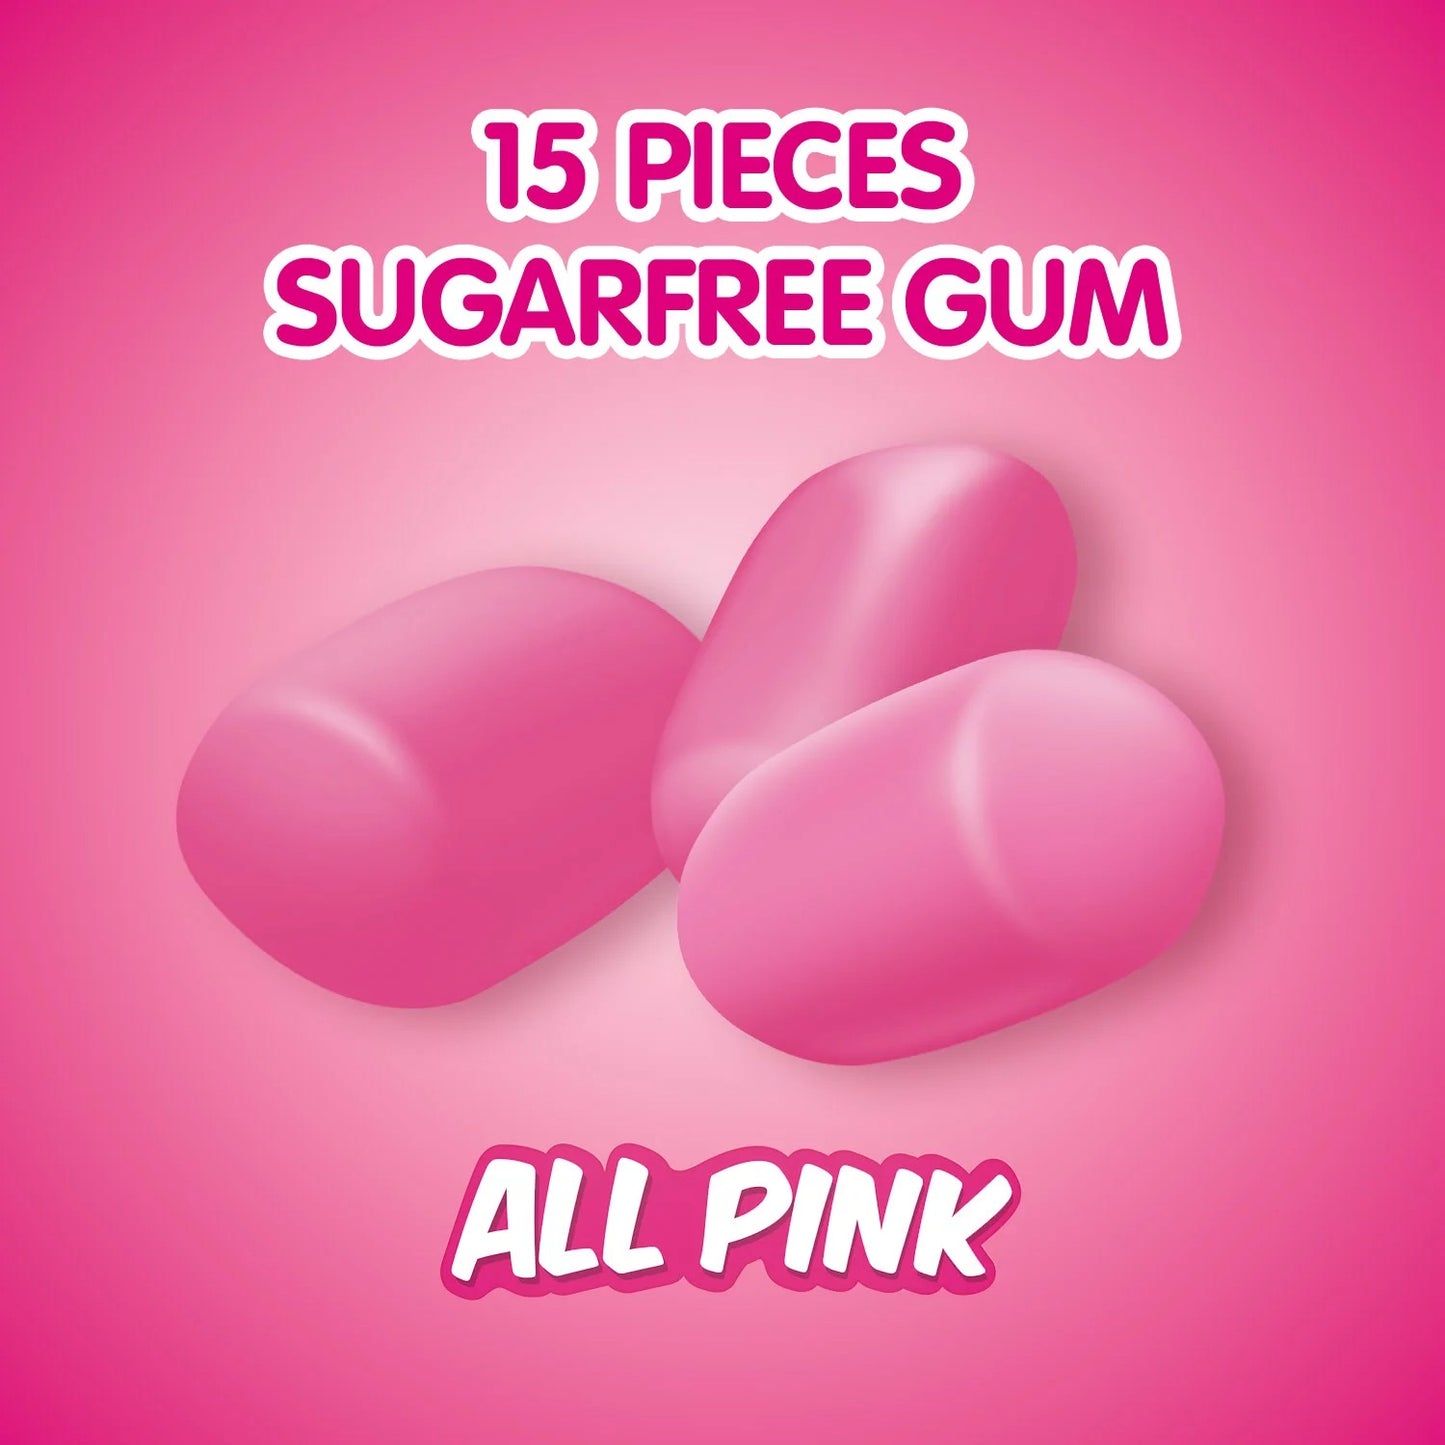 Starburst All Pink Strawberry Sugar Free Gum